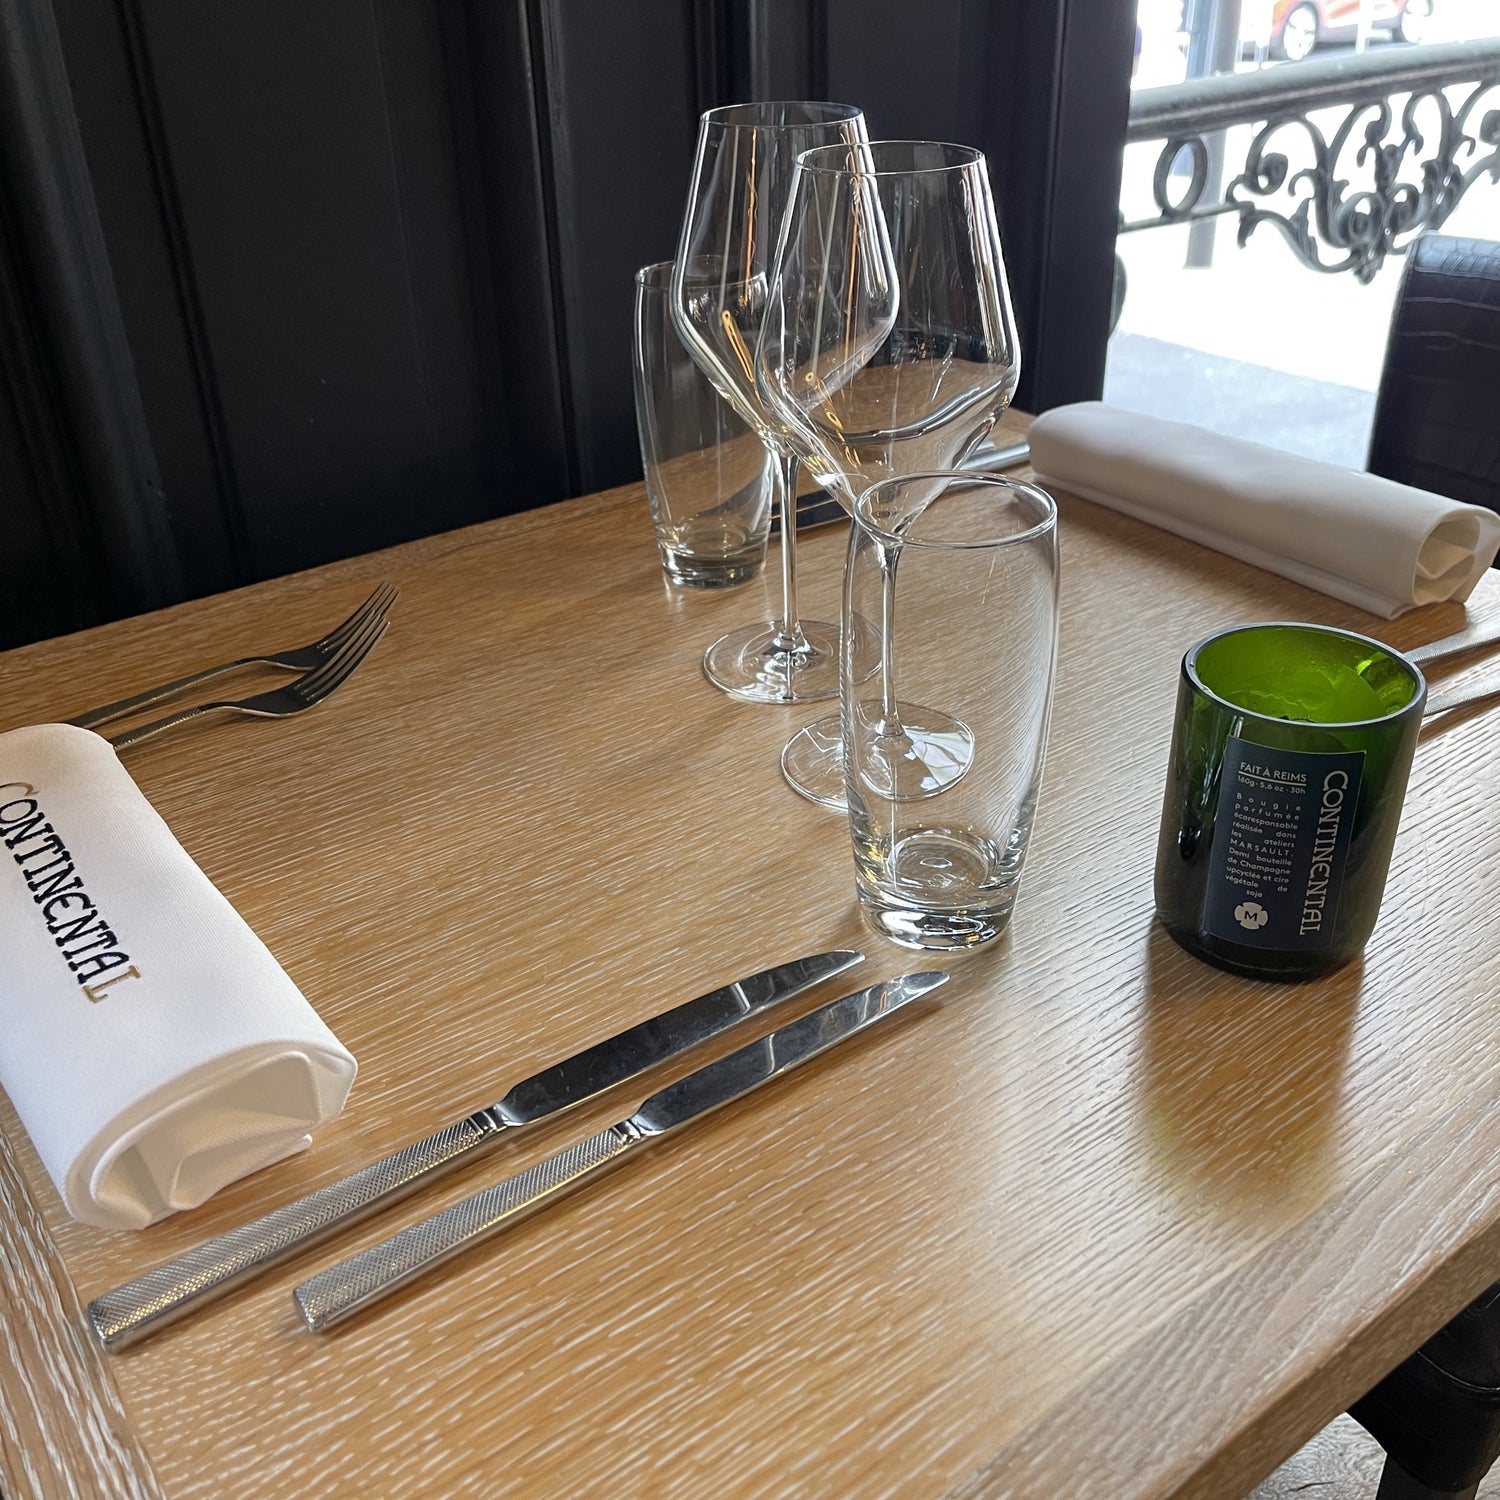 Bougie format demie bouteille posée sur une table en bois de l'hotel-restaurant Le Continental situé à Reims 